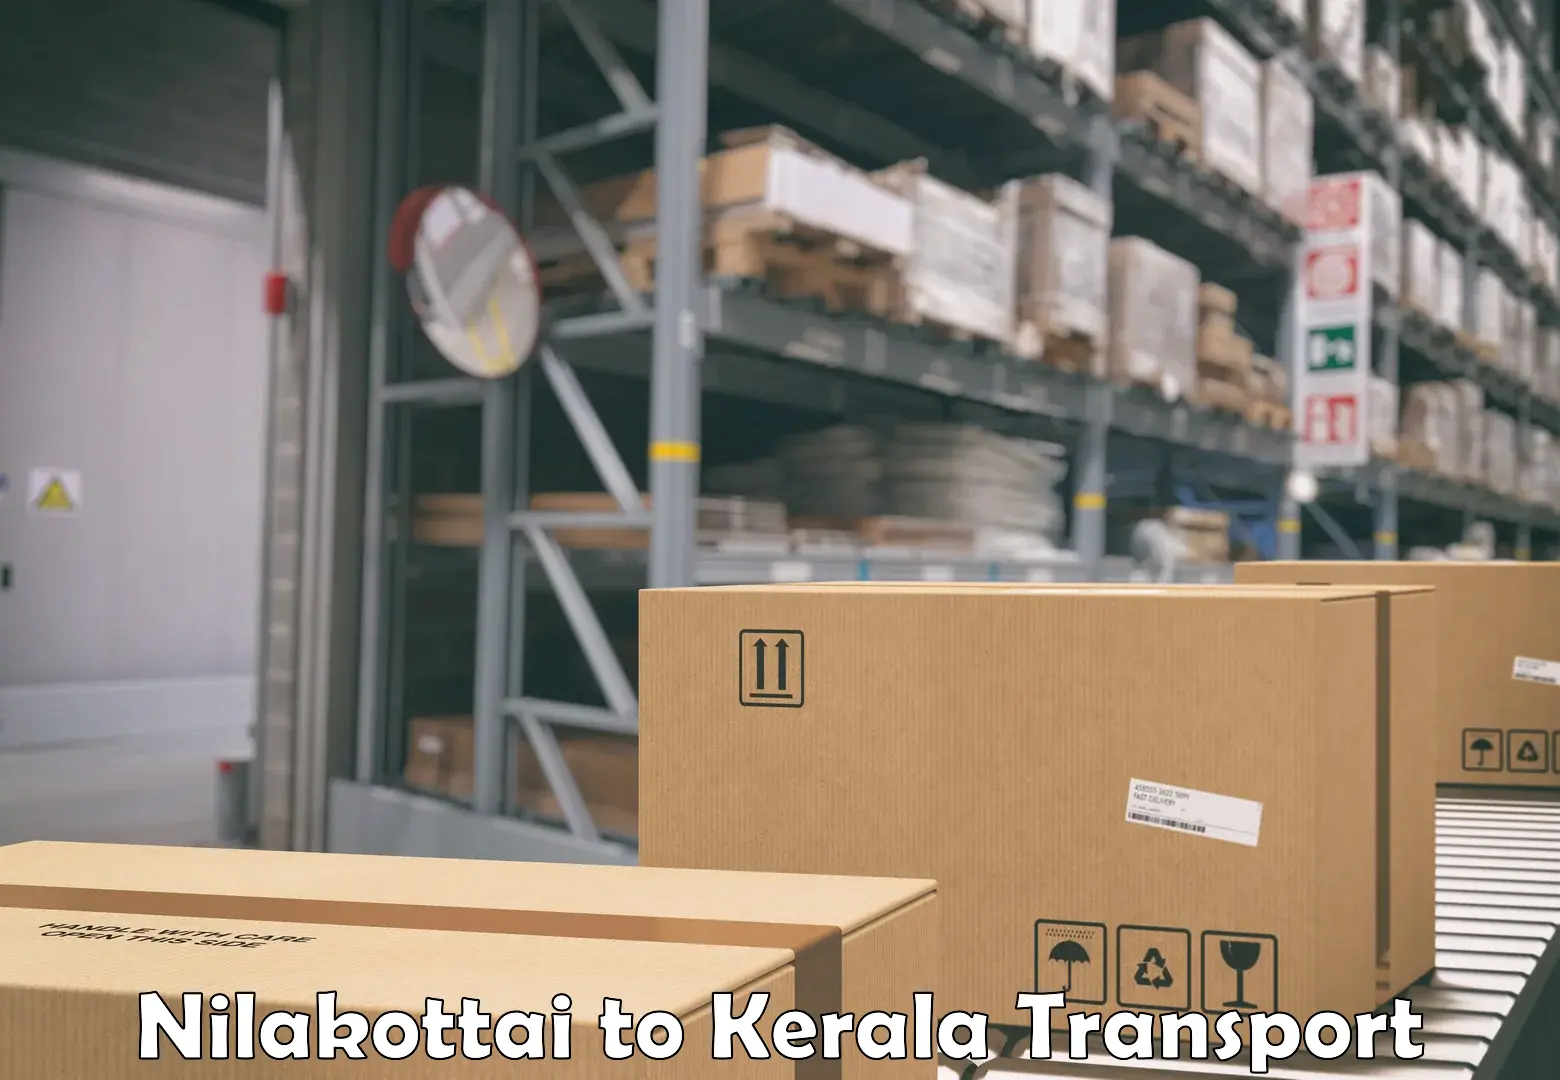 Goods delivery service Nilakottai to Thiruvananthapuram